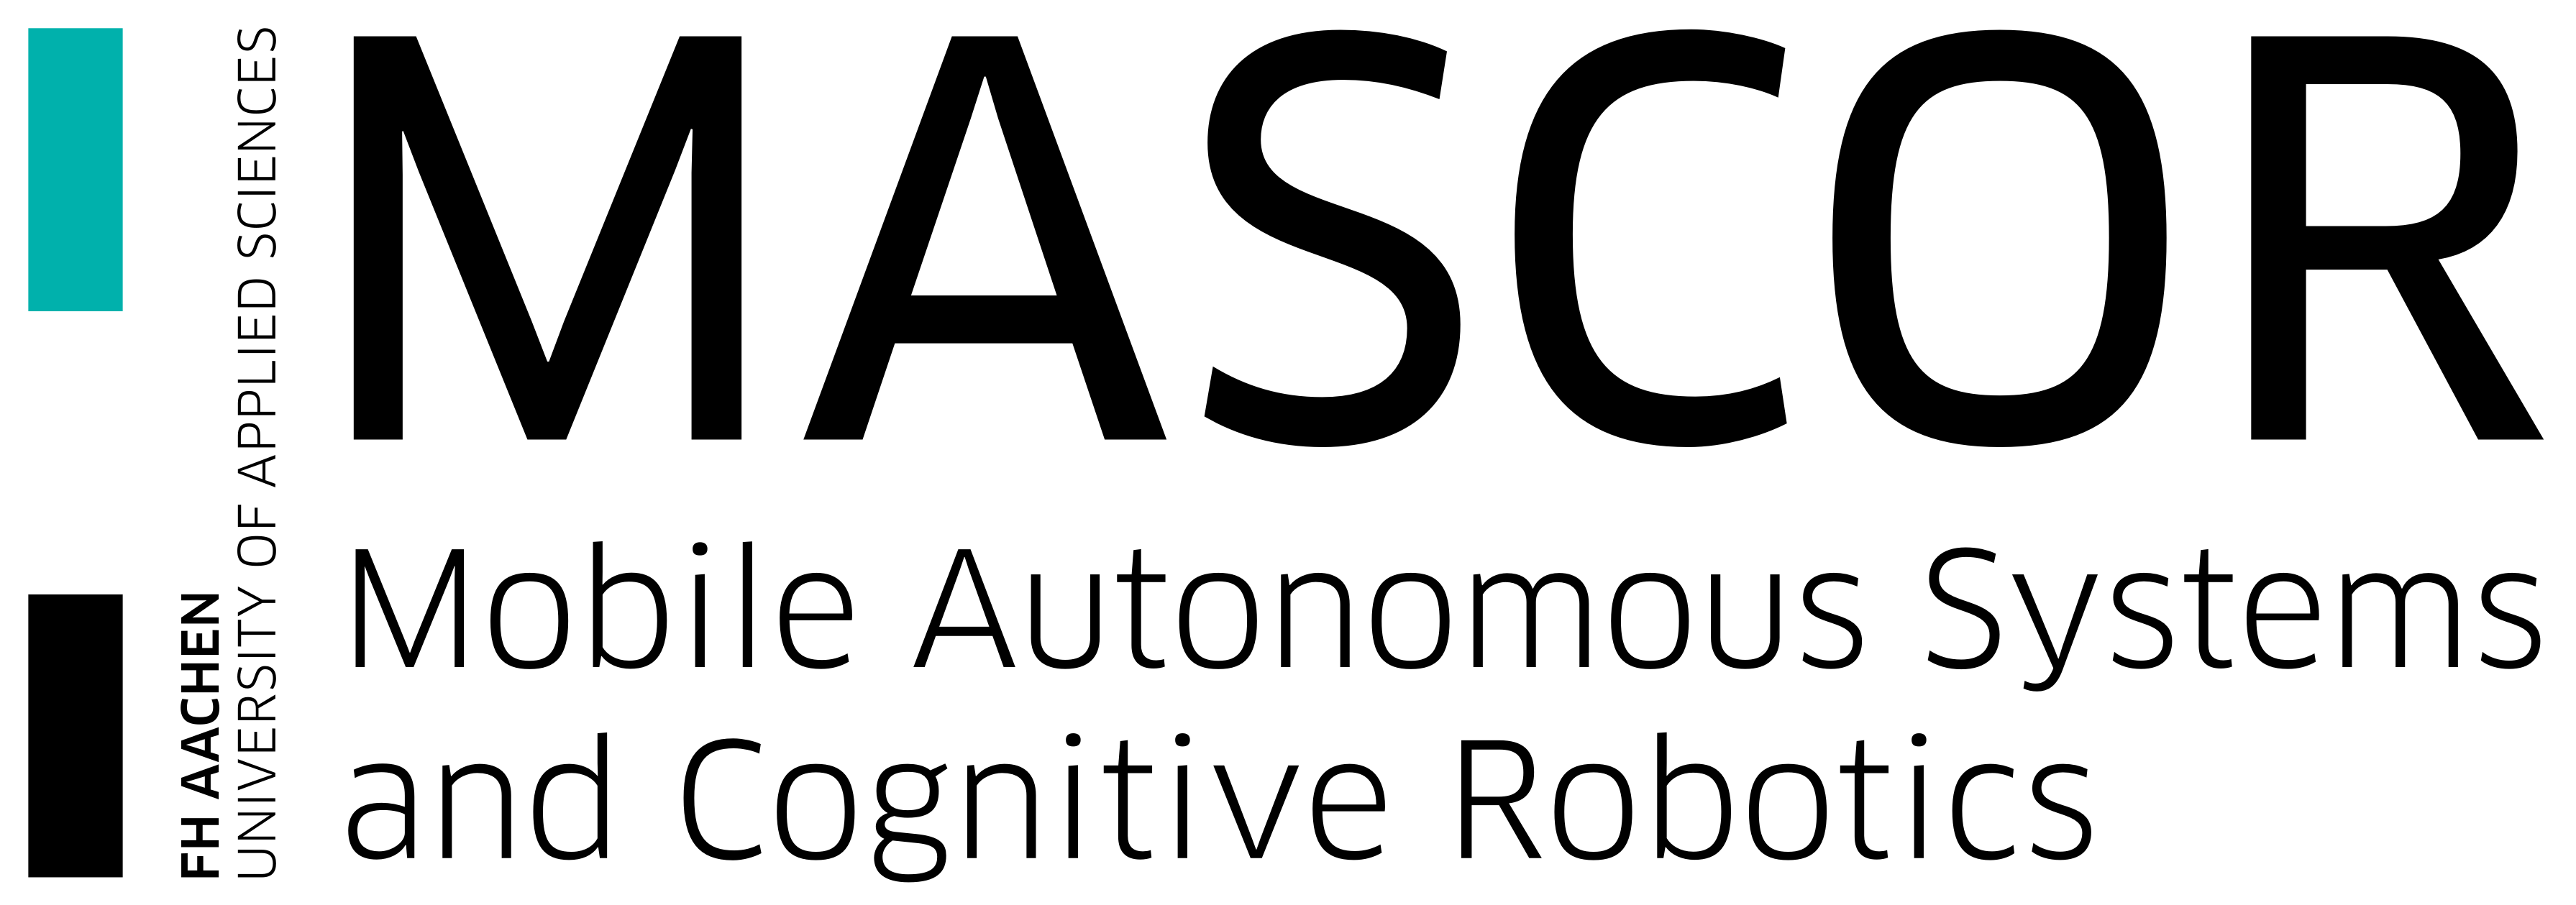 Mobile Autonomous Systems and Cognitive Robotics